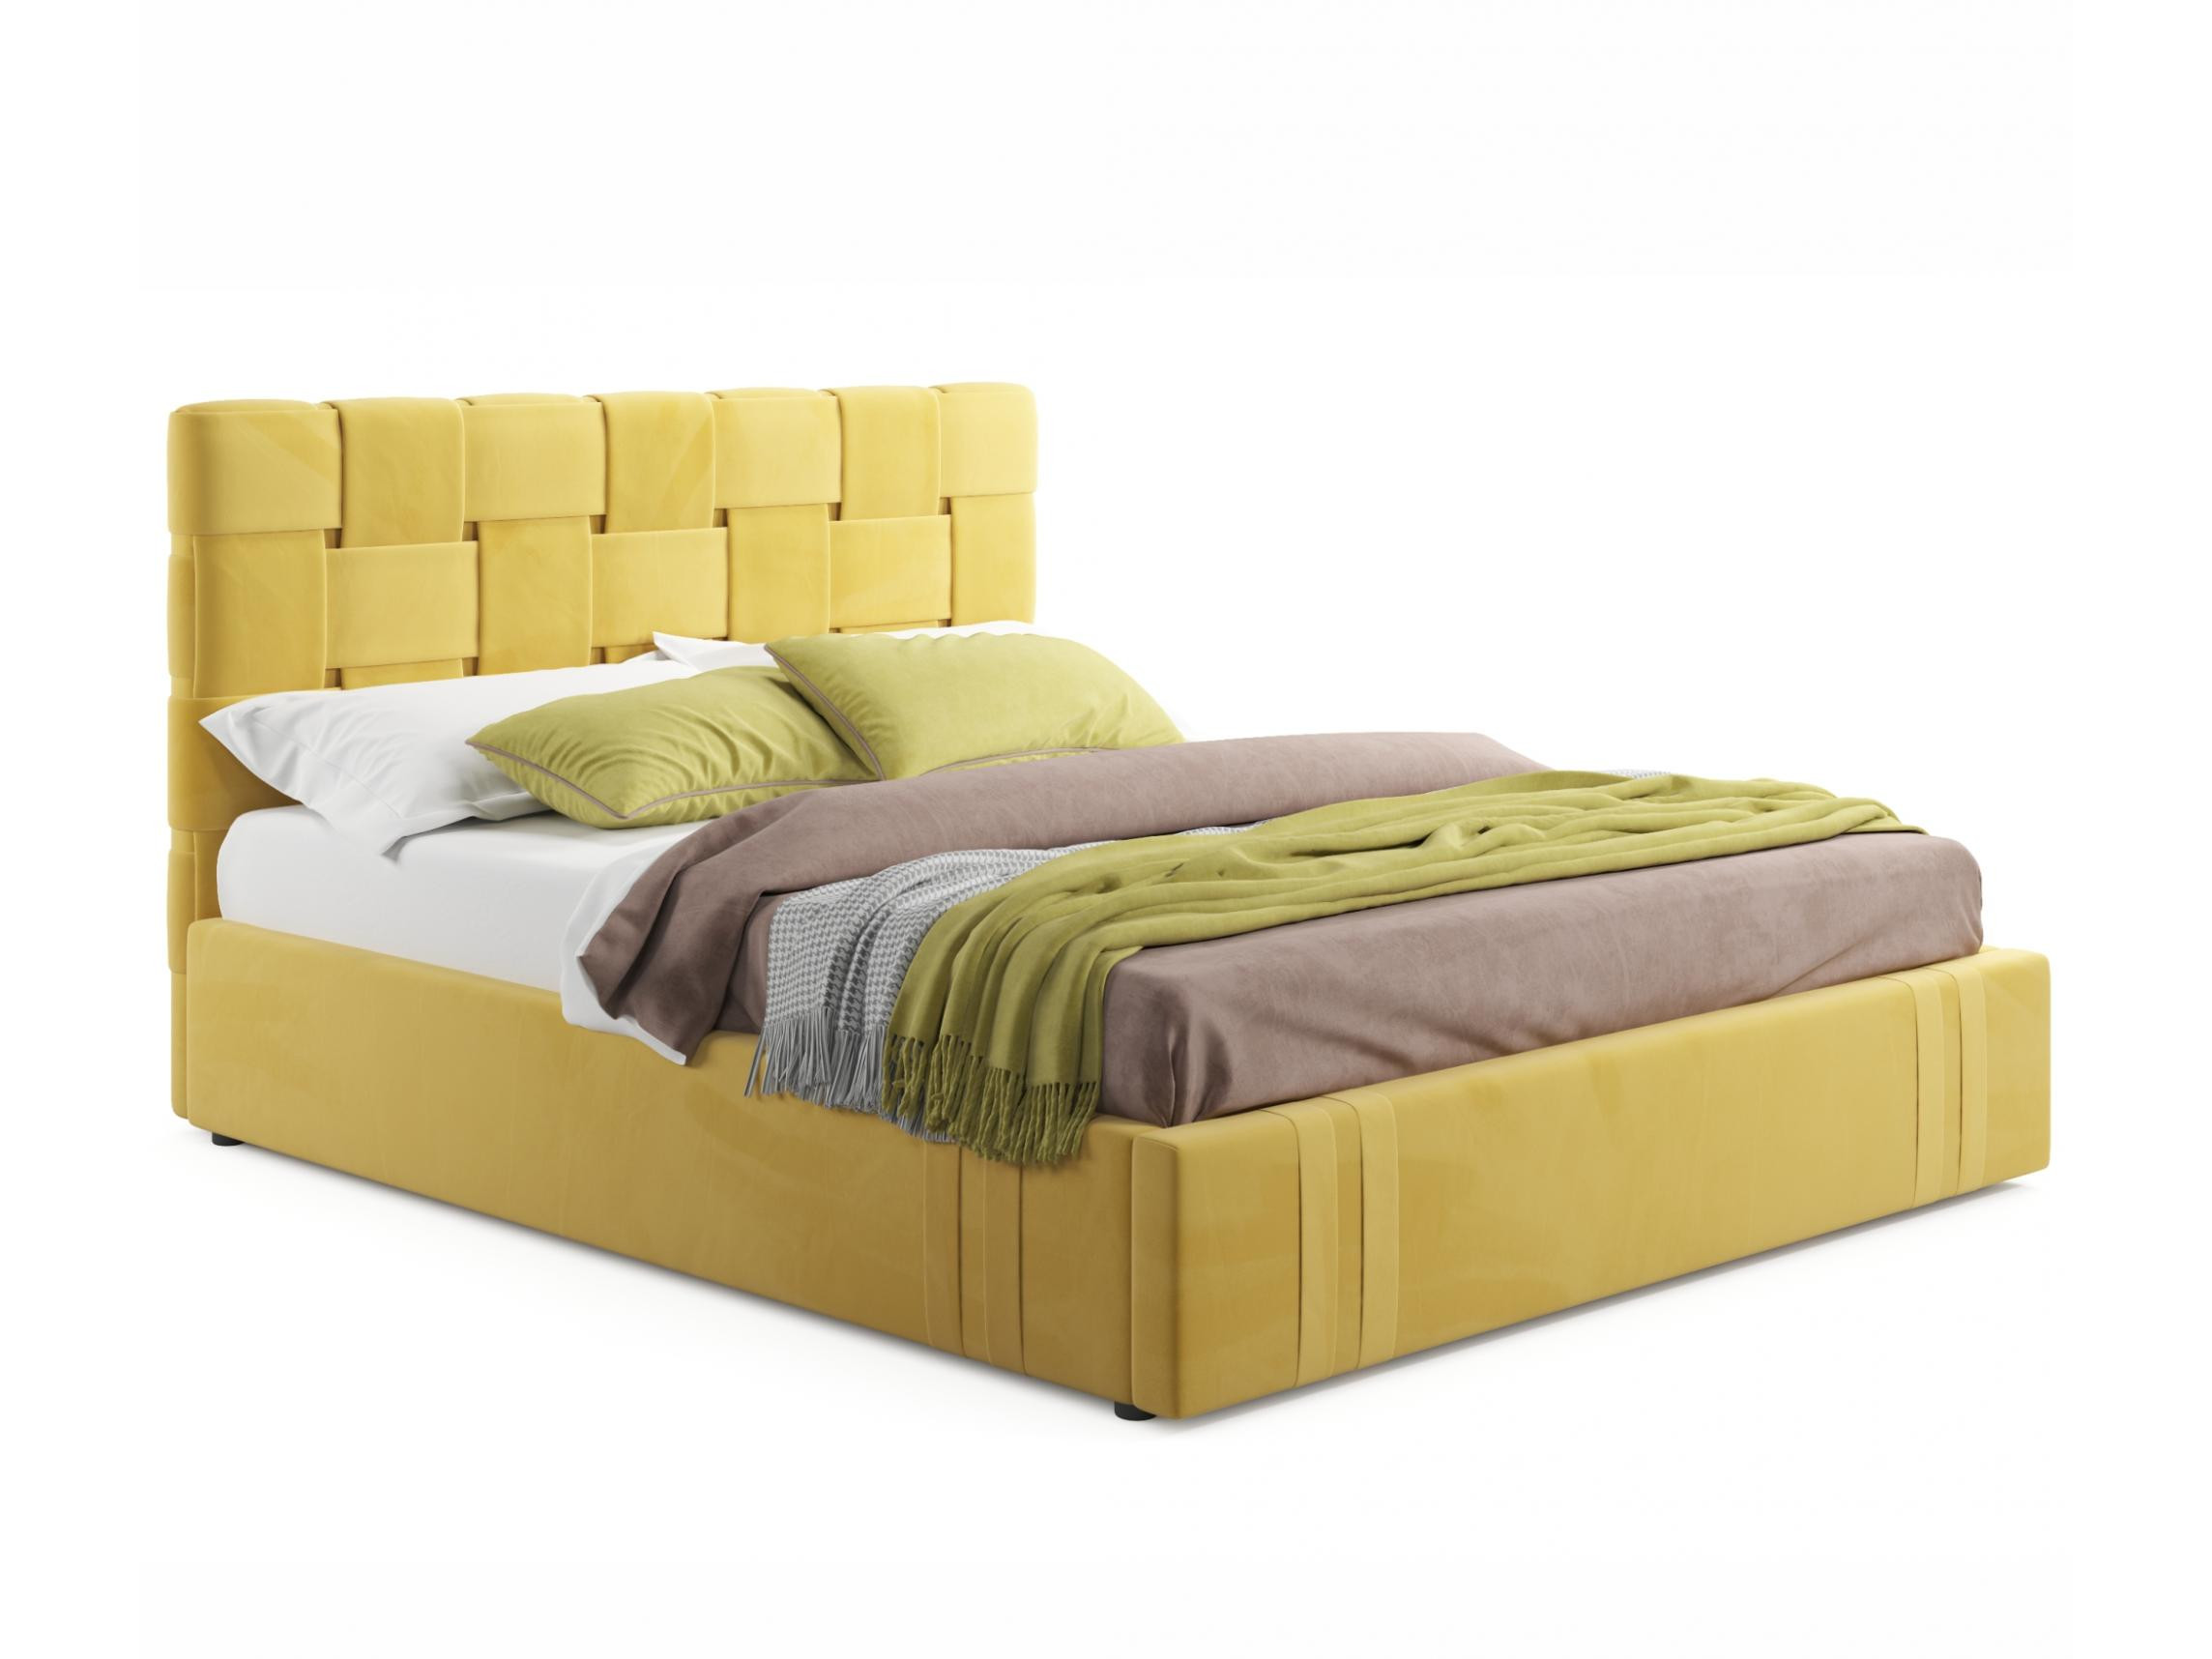 Мягкая кровать Tiffany 1600 желтая с ортопедическим основанием с матрасом АСТРА желтый, Желтый, Велюр, ДСП мягкая кровать ameli 1600 желтая с ортопедическим основанием желтый желтый велюр дсп